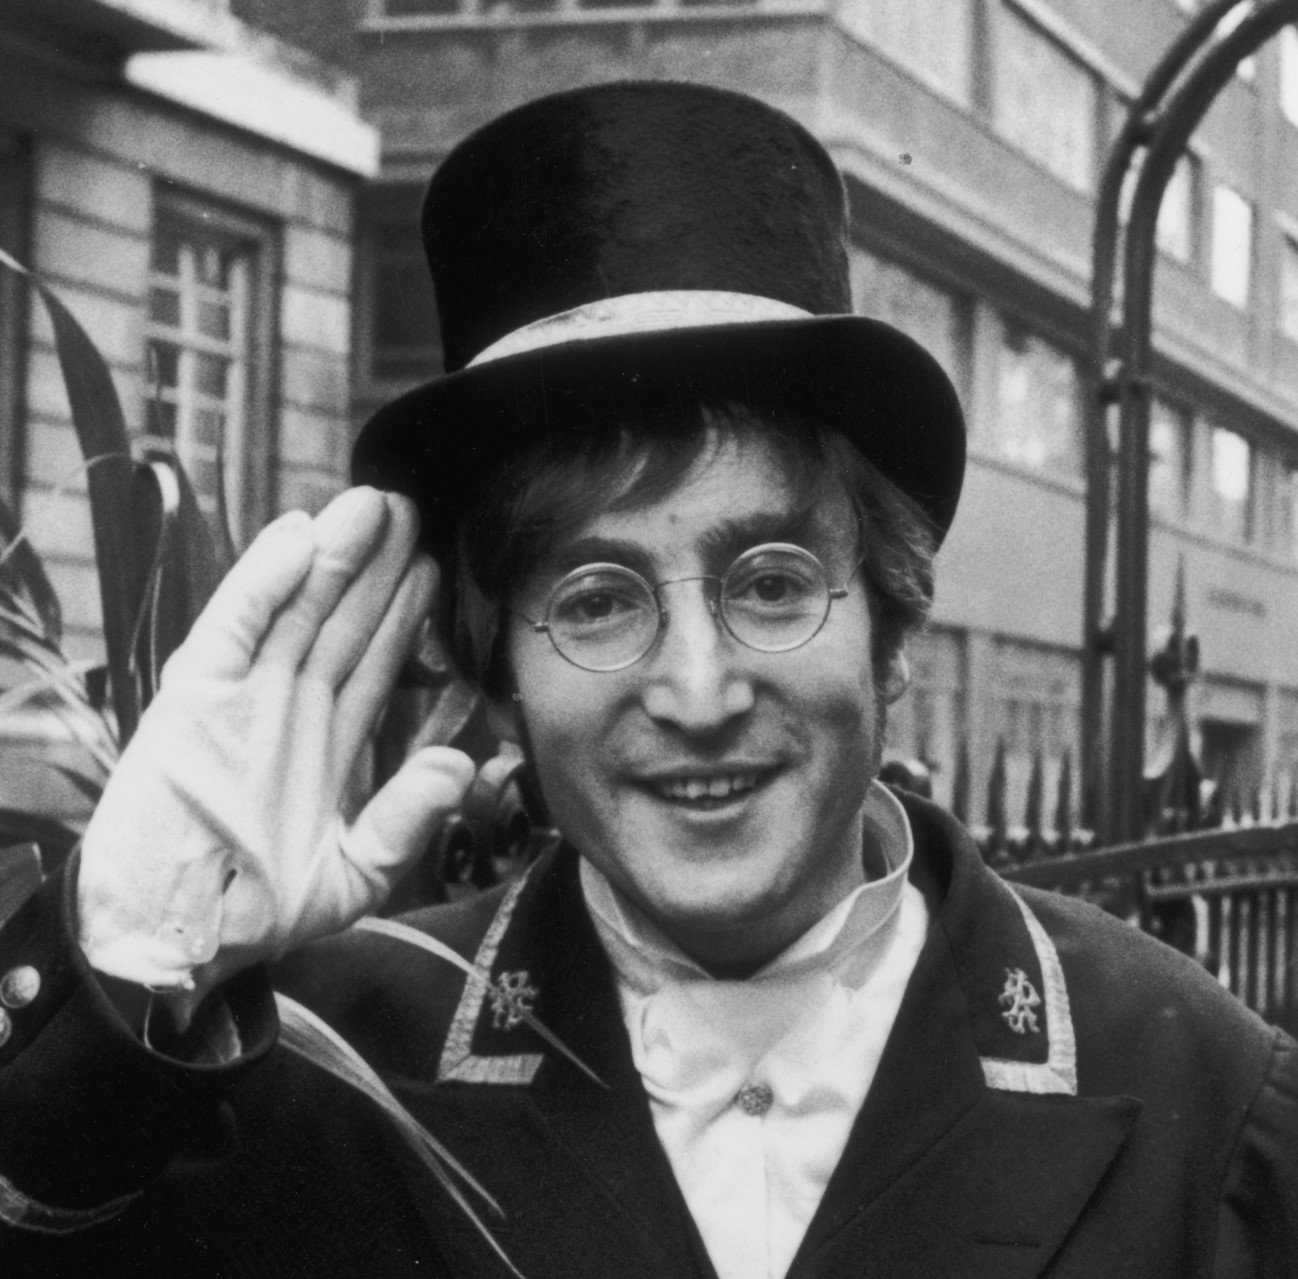 The Beatles' John Lennon wearing a hat